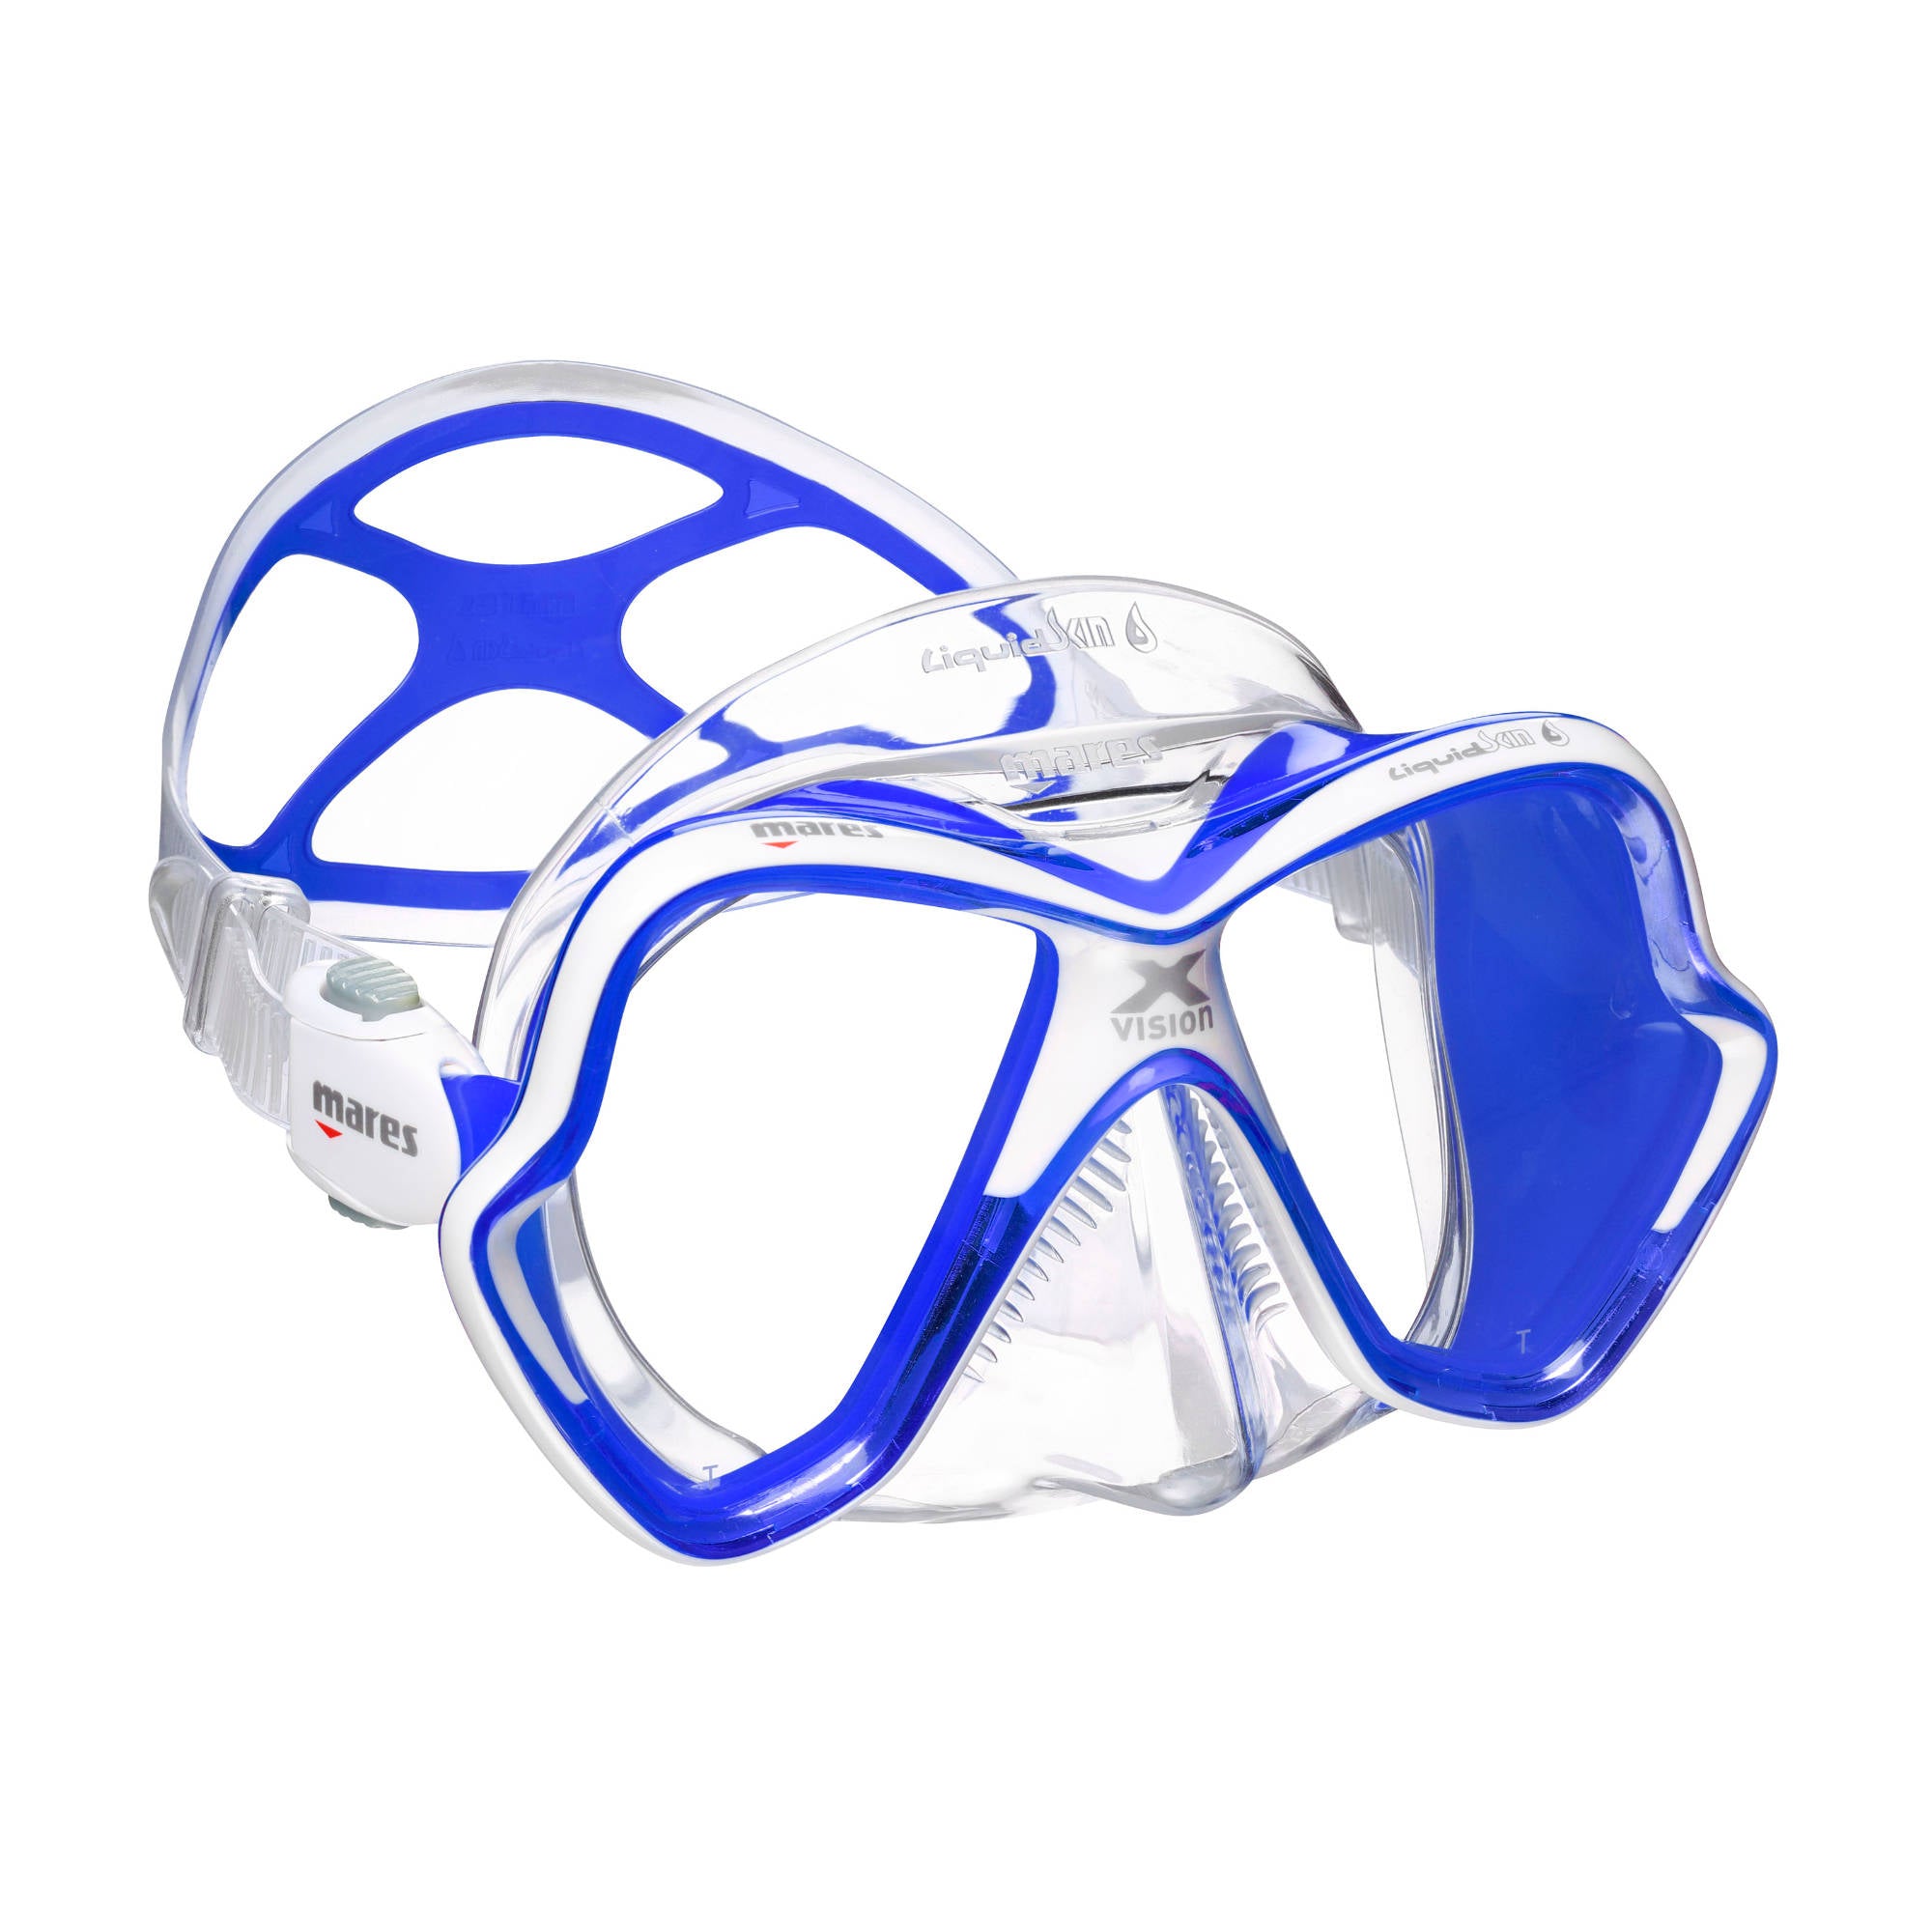 x-vision ultra maske klar blau weiss